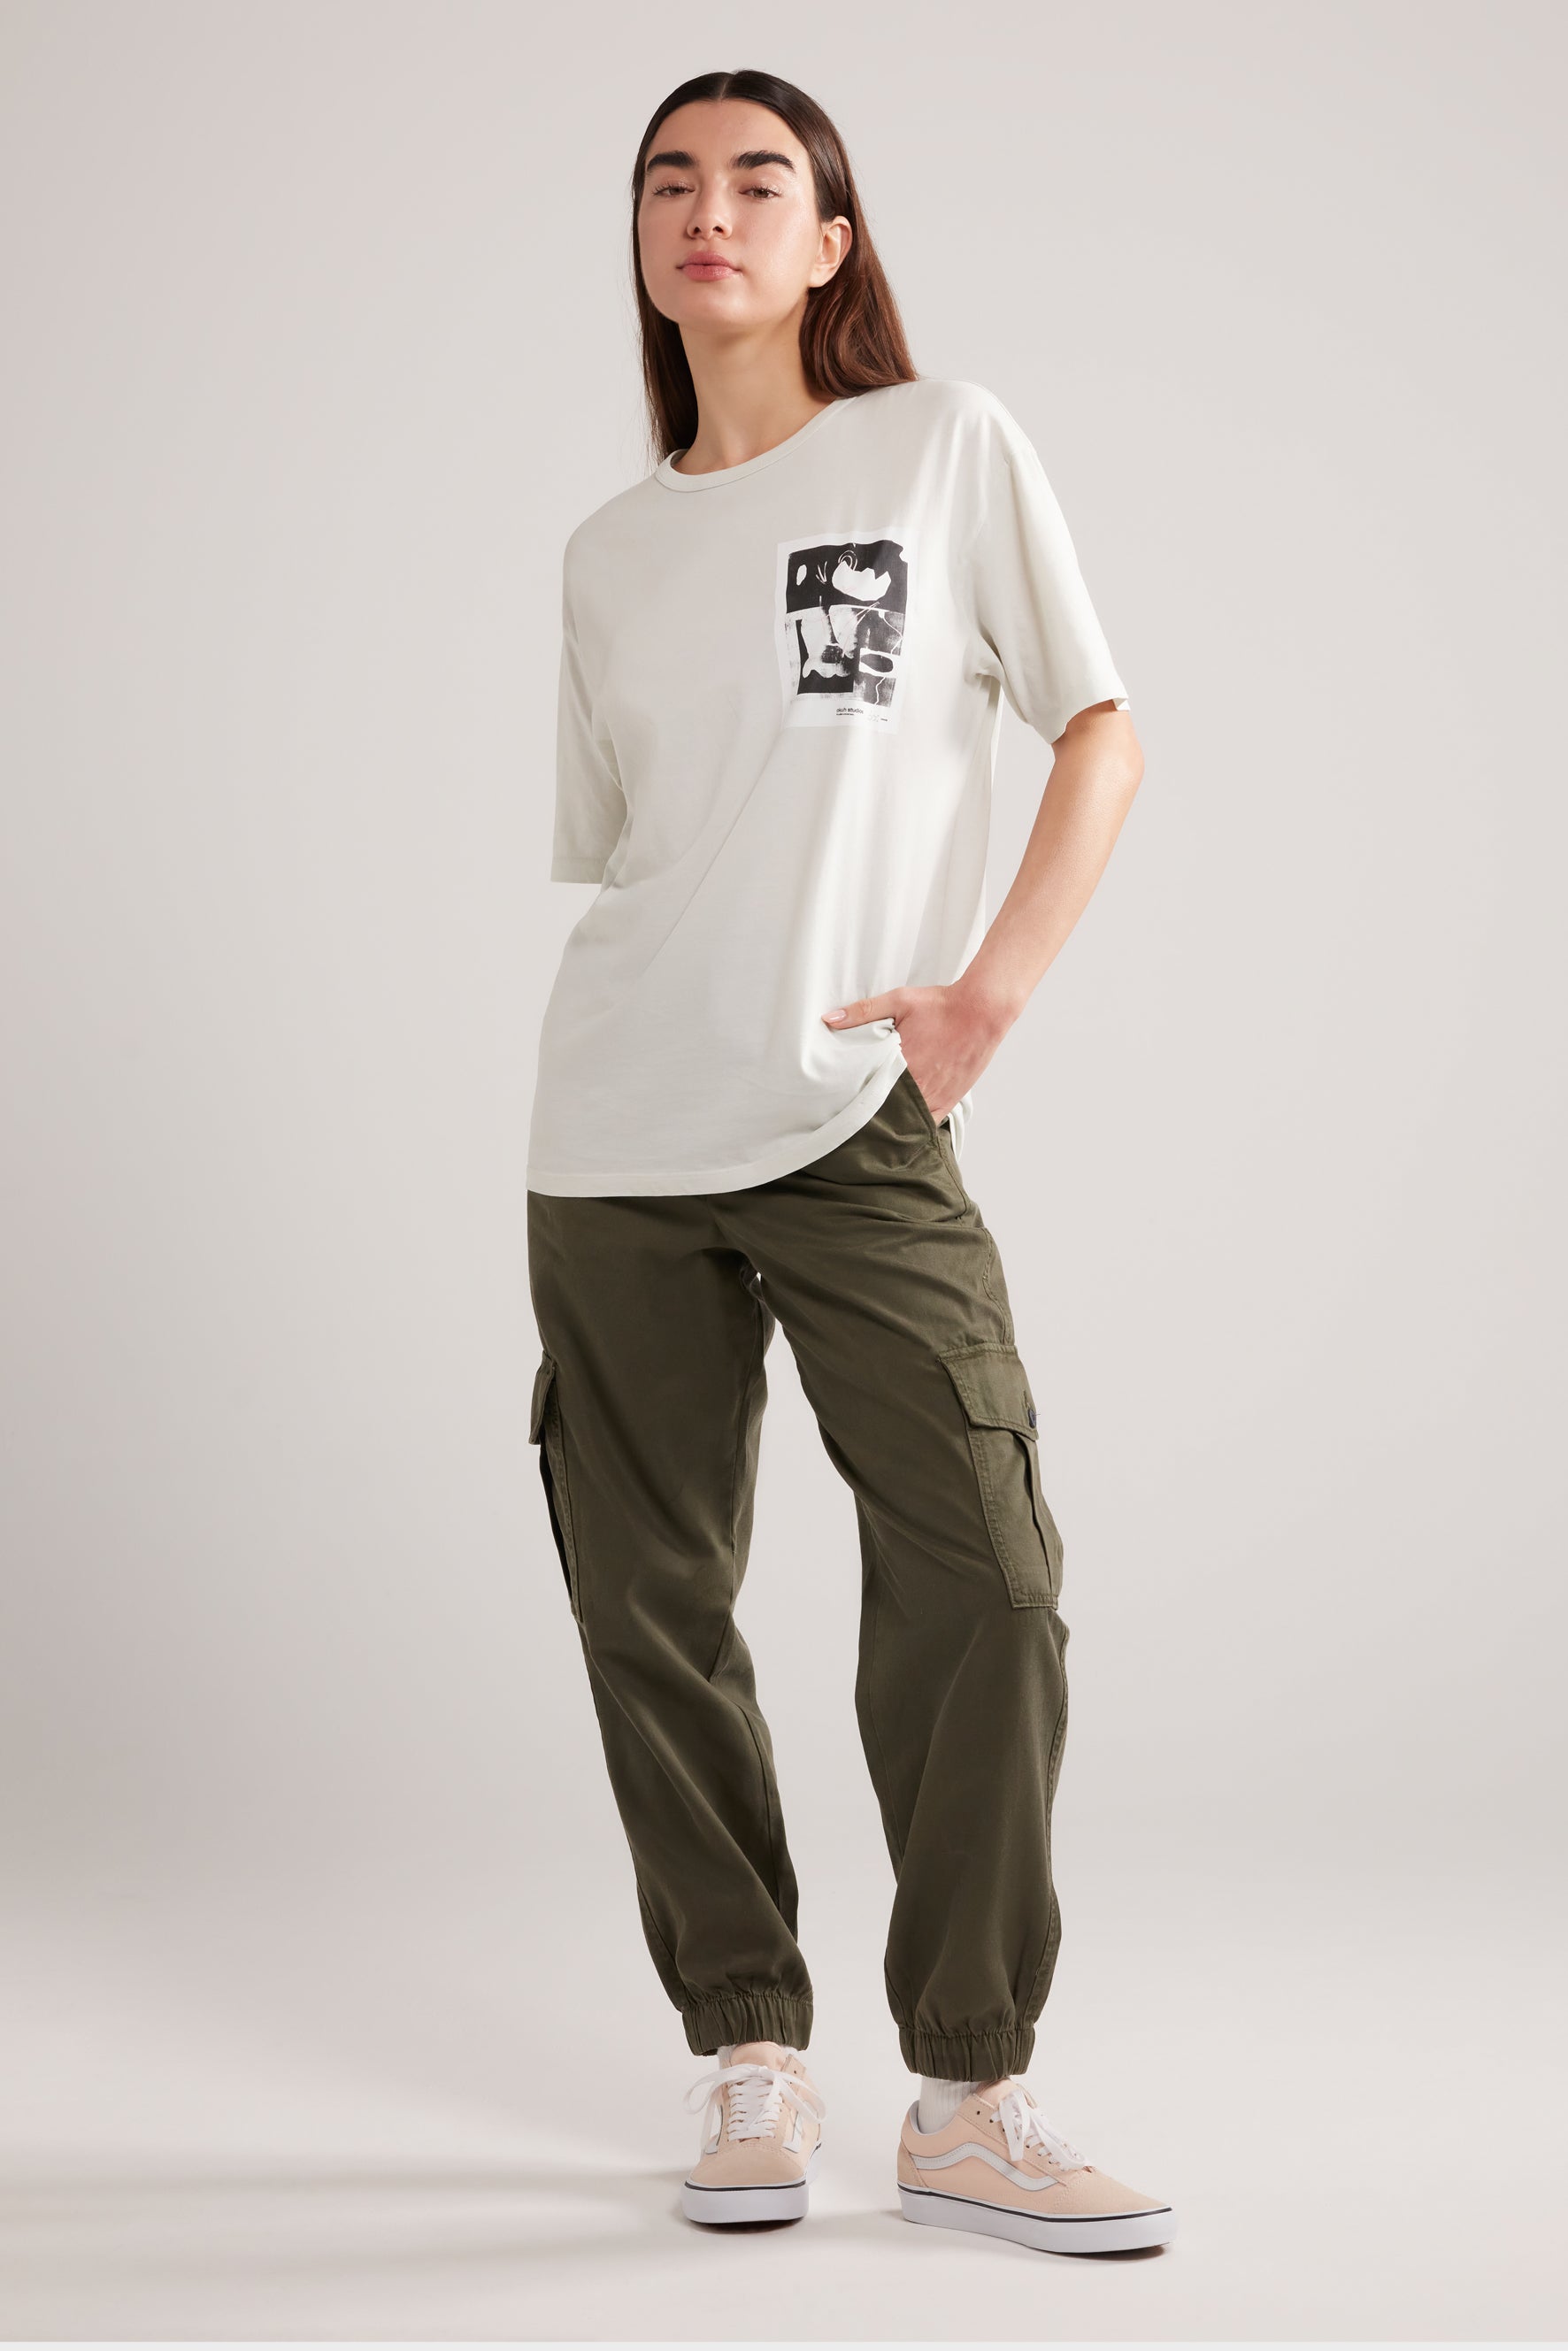 Atoka - Ivory T-Shirt